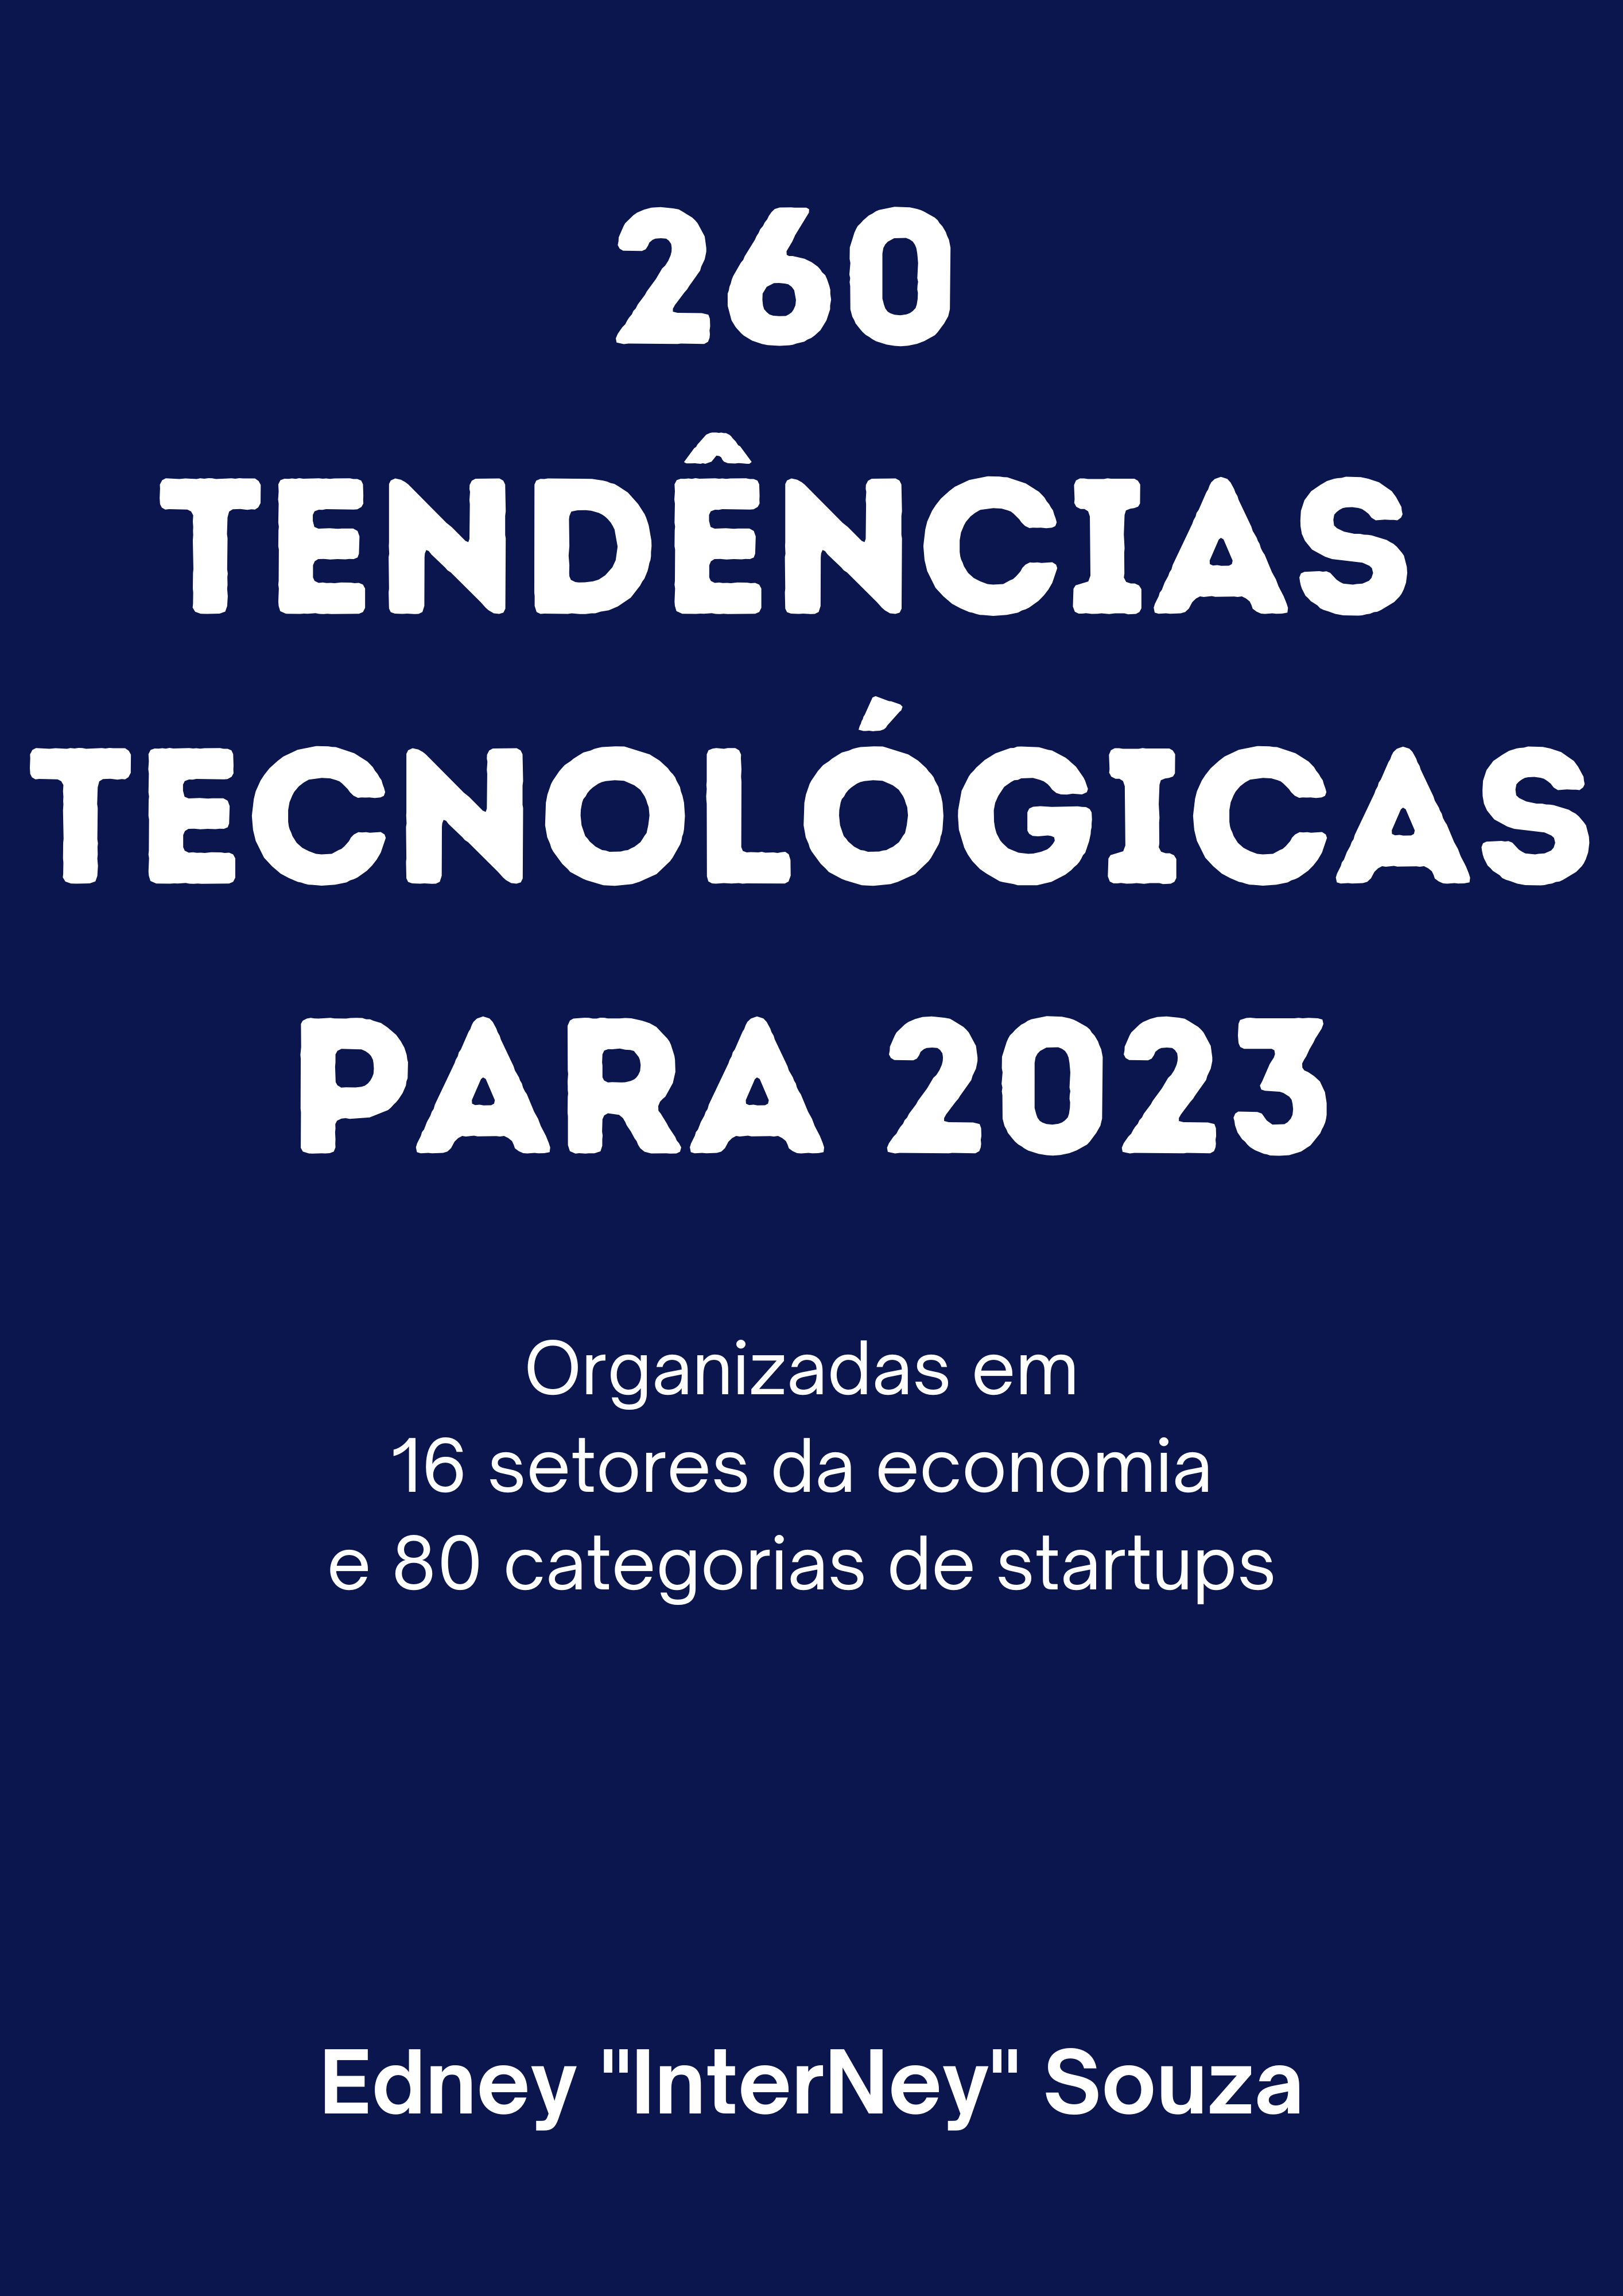 260 Tendências Tecnológicas para 2023